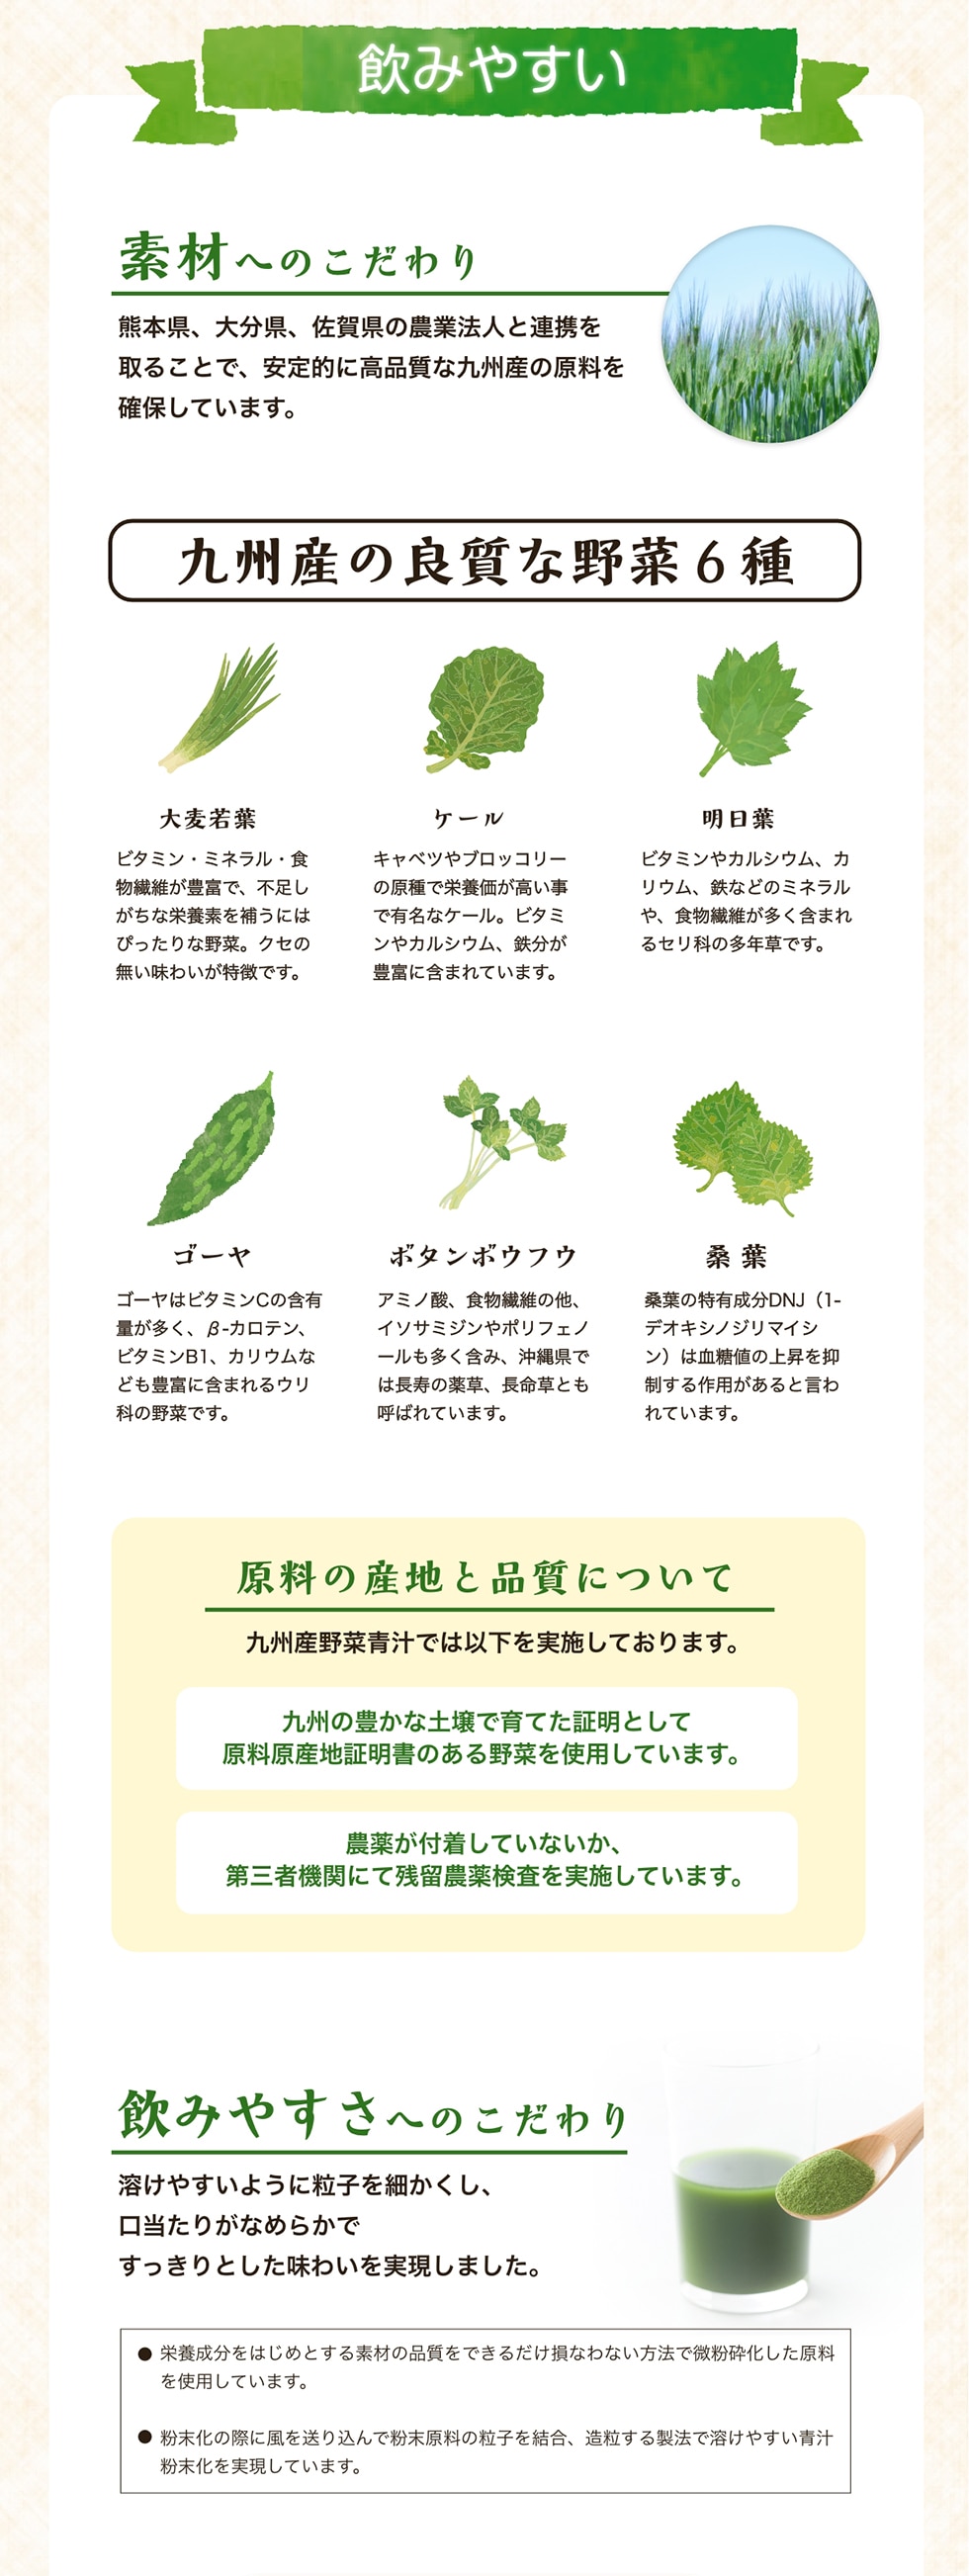 飲みやすい　素材へのこだわり　熊本県、大分県、佐賀県の農業法人と連携を取ることで、安定的に高品質な九州産の原料を確保しています。　九州産の良質な野菜6種　原料の産地と品質について　飲みやすさへのこだわり　溶けやすいように粒子を細かくし、口当たりがなめらかですっきりとした味わいを実現しました。